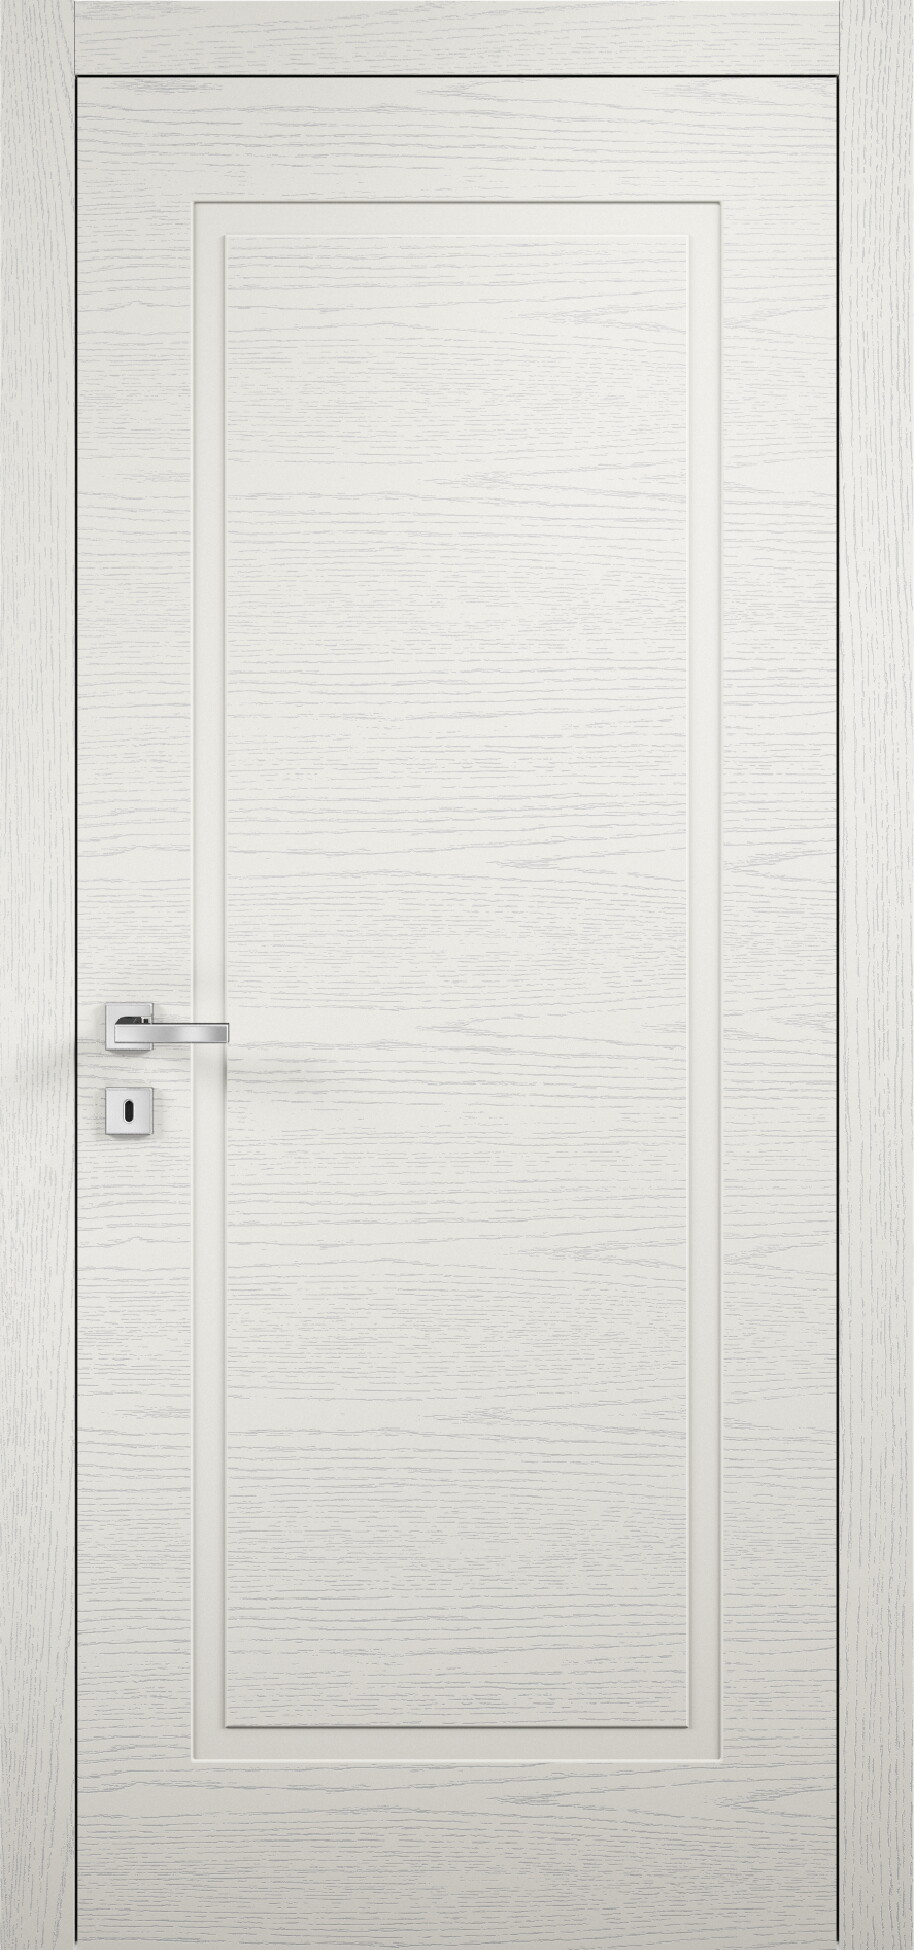 межкомнатные двери эмалированная межкомнатная дверь glamour 101 эмаль слоновая кость 